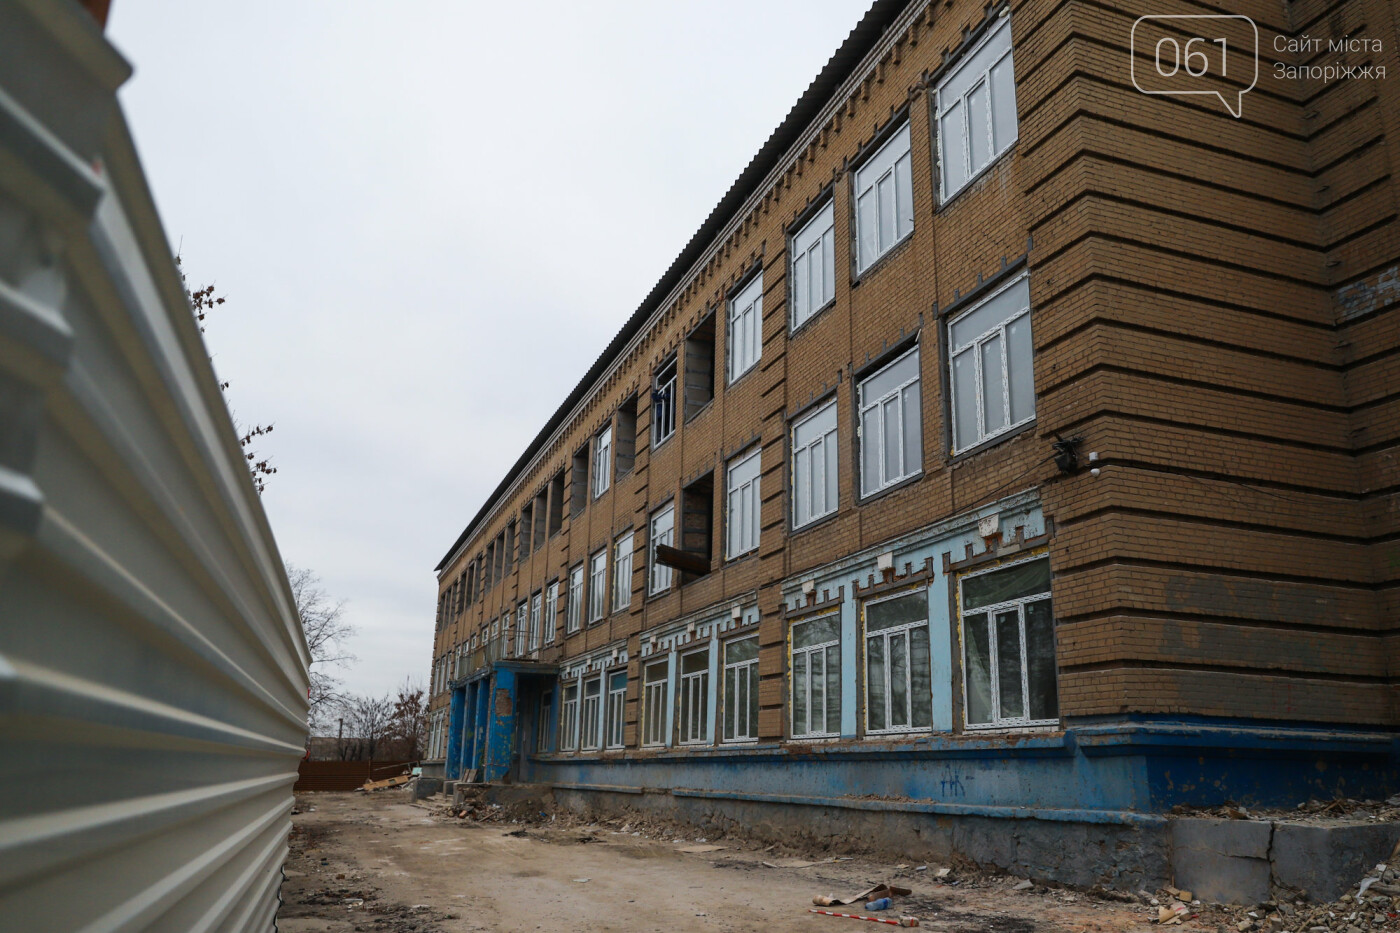 В Запорожье восстанавливают школу, которая пострадала во время масштабного пожара 5 лет назад, - ФОТОРЕПОРТАЖ , фото-11